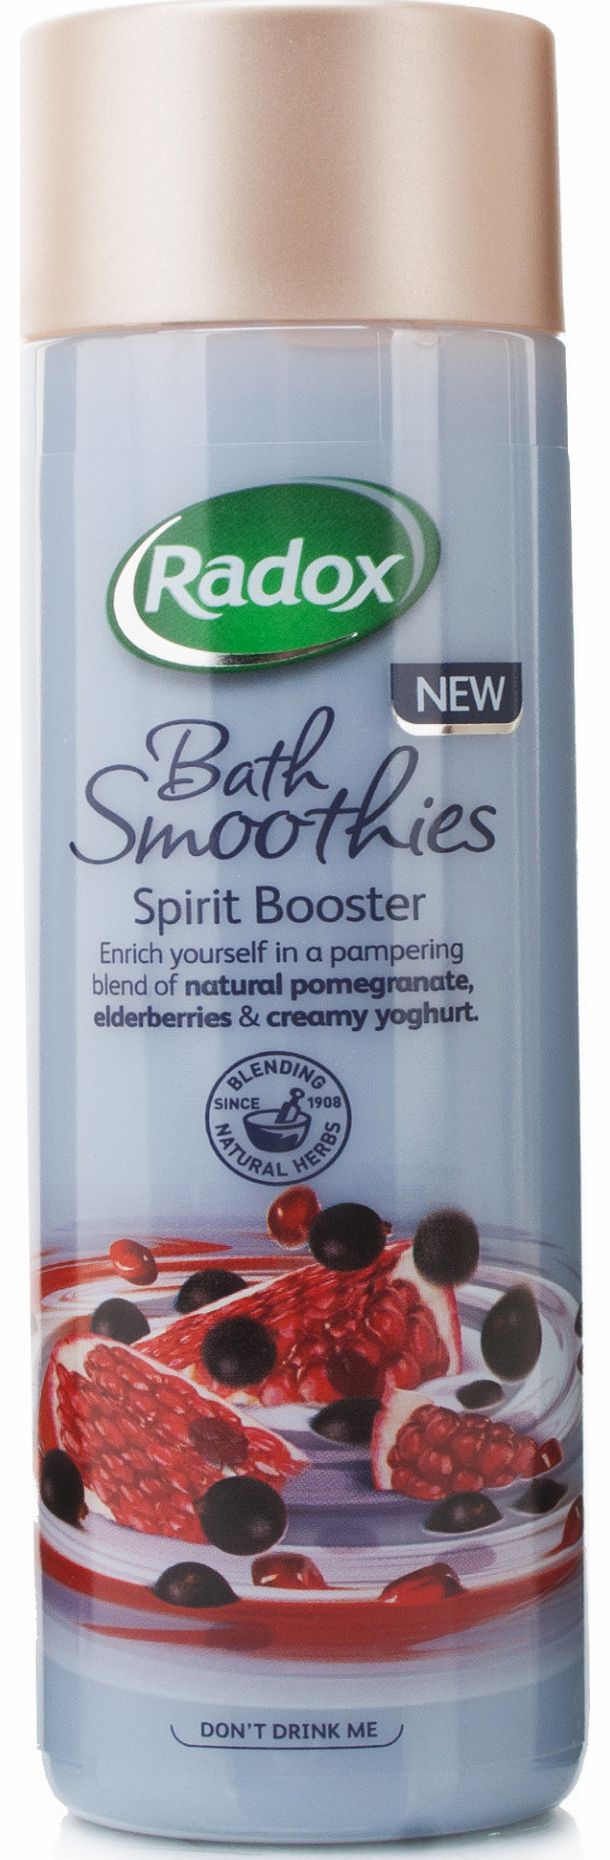 Bath Smoothies Spirit Booster